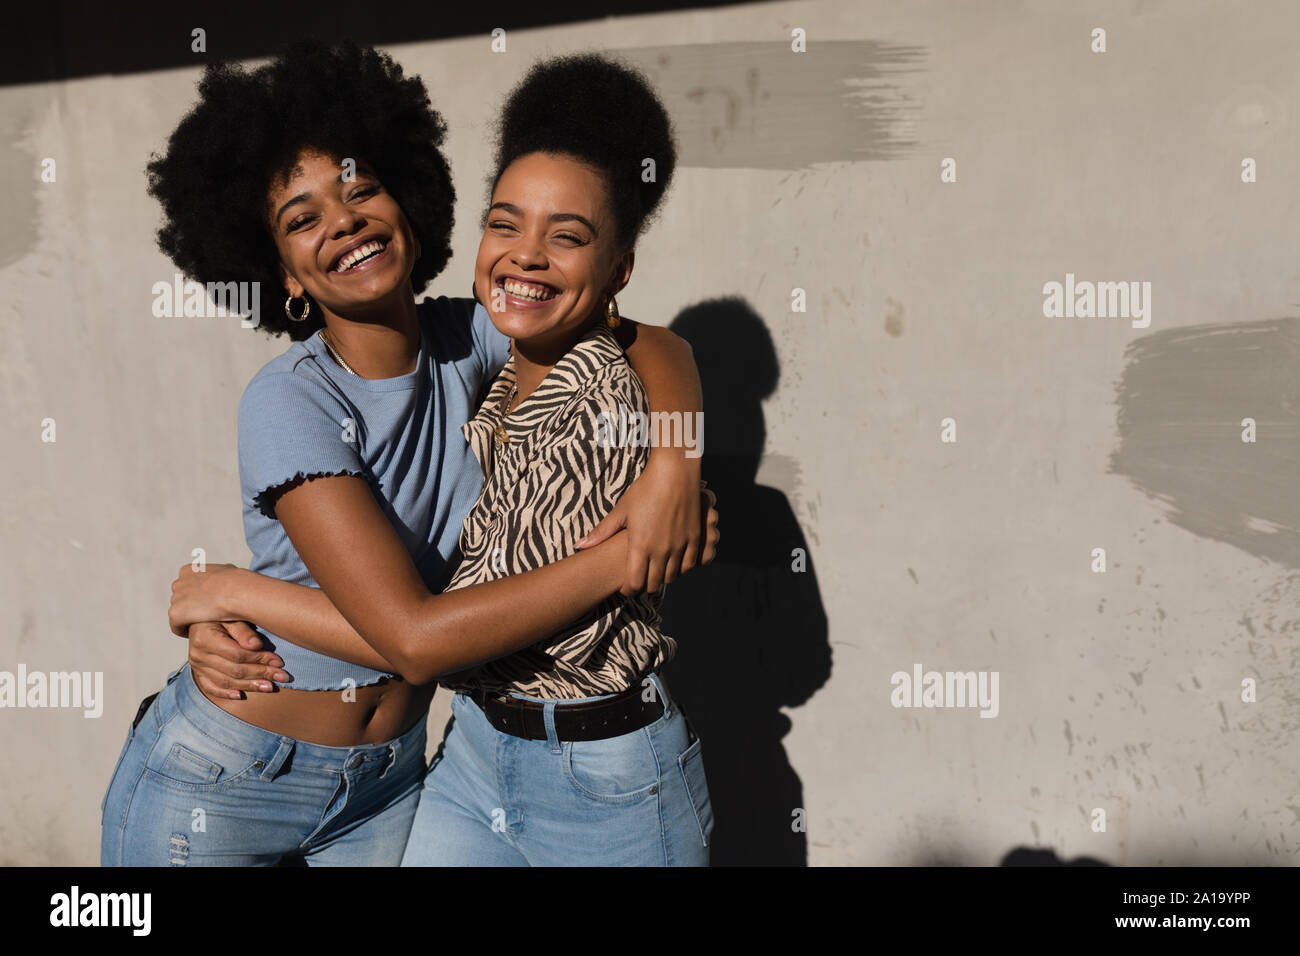 Deux jeunes femmes embracing outdoors Banque D'Images